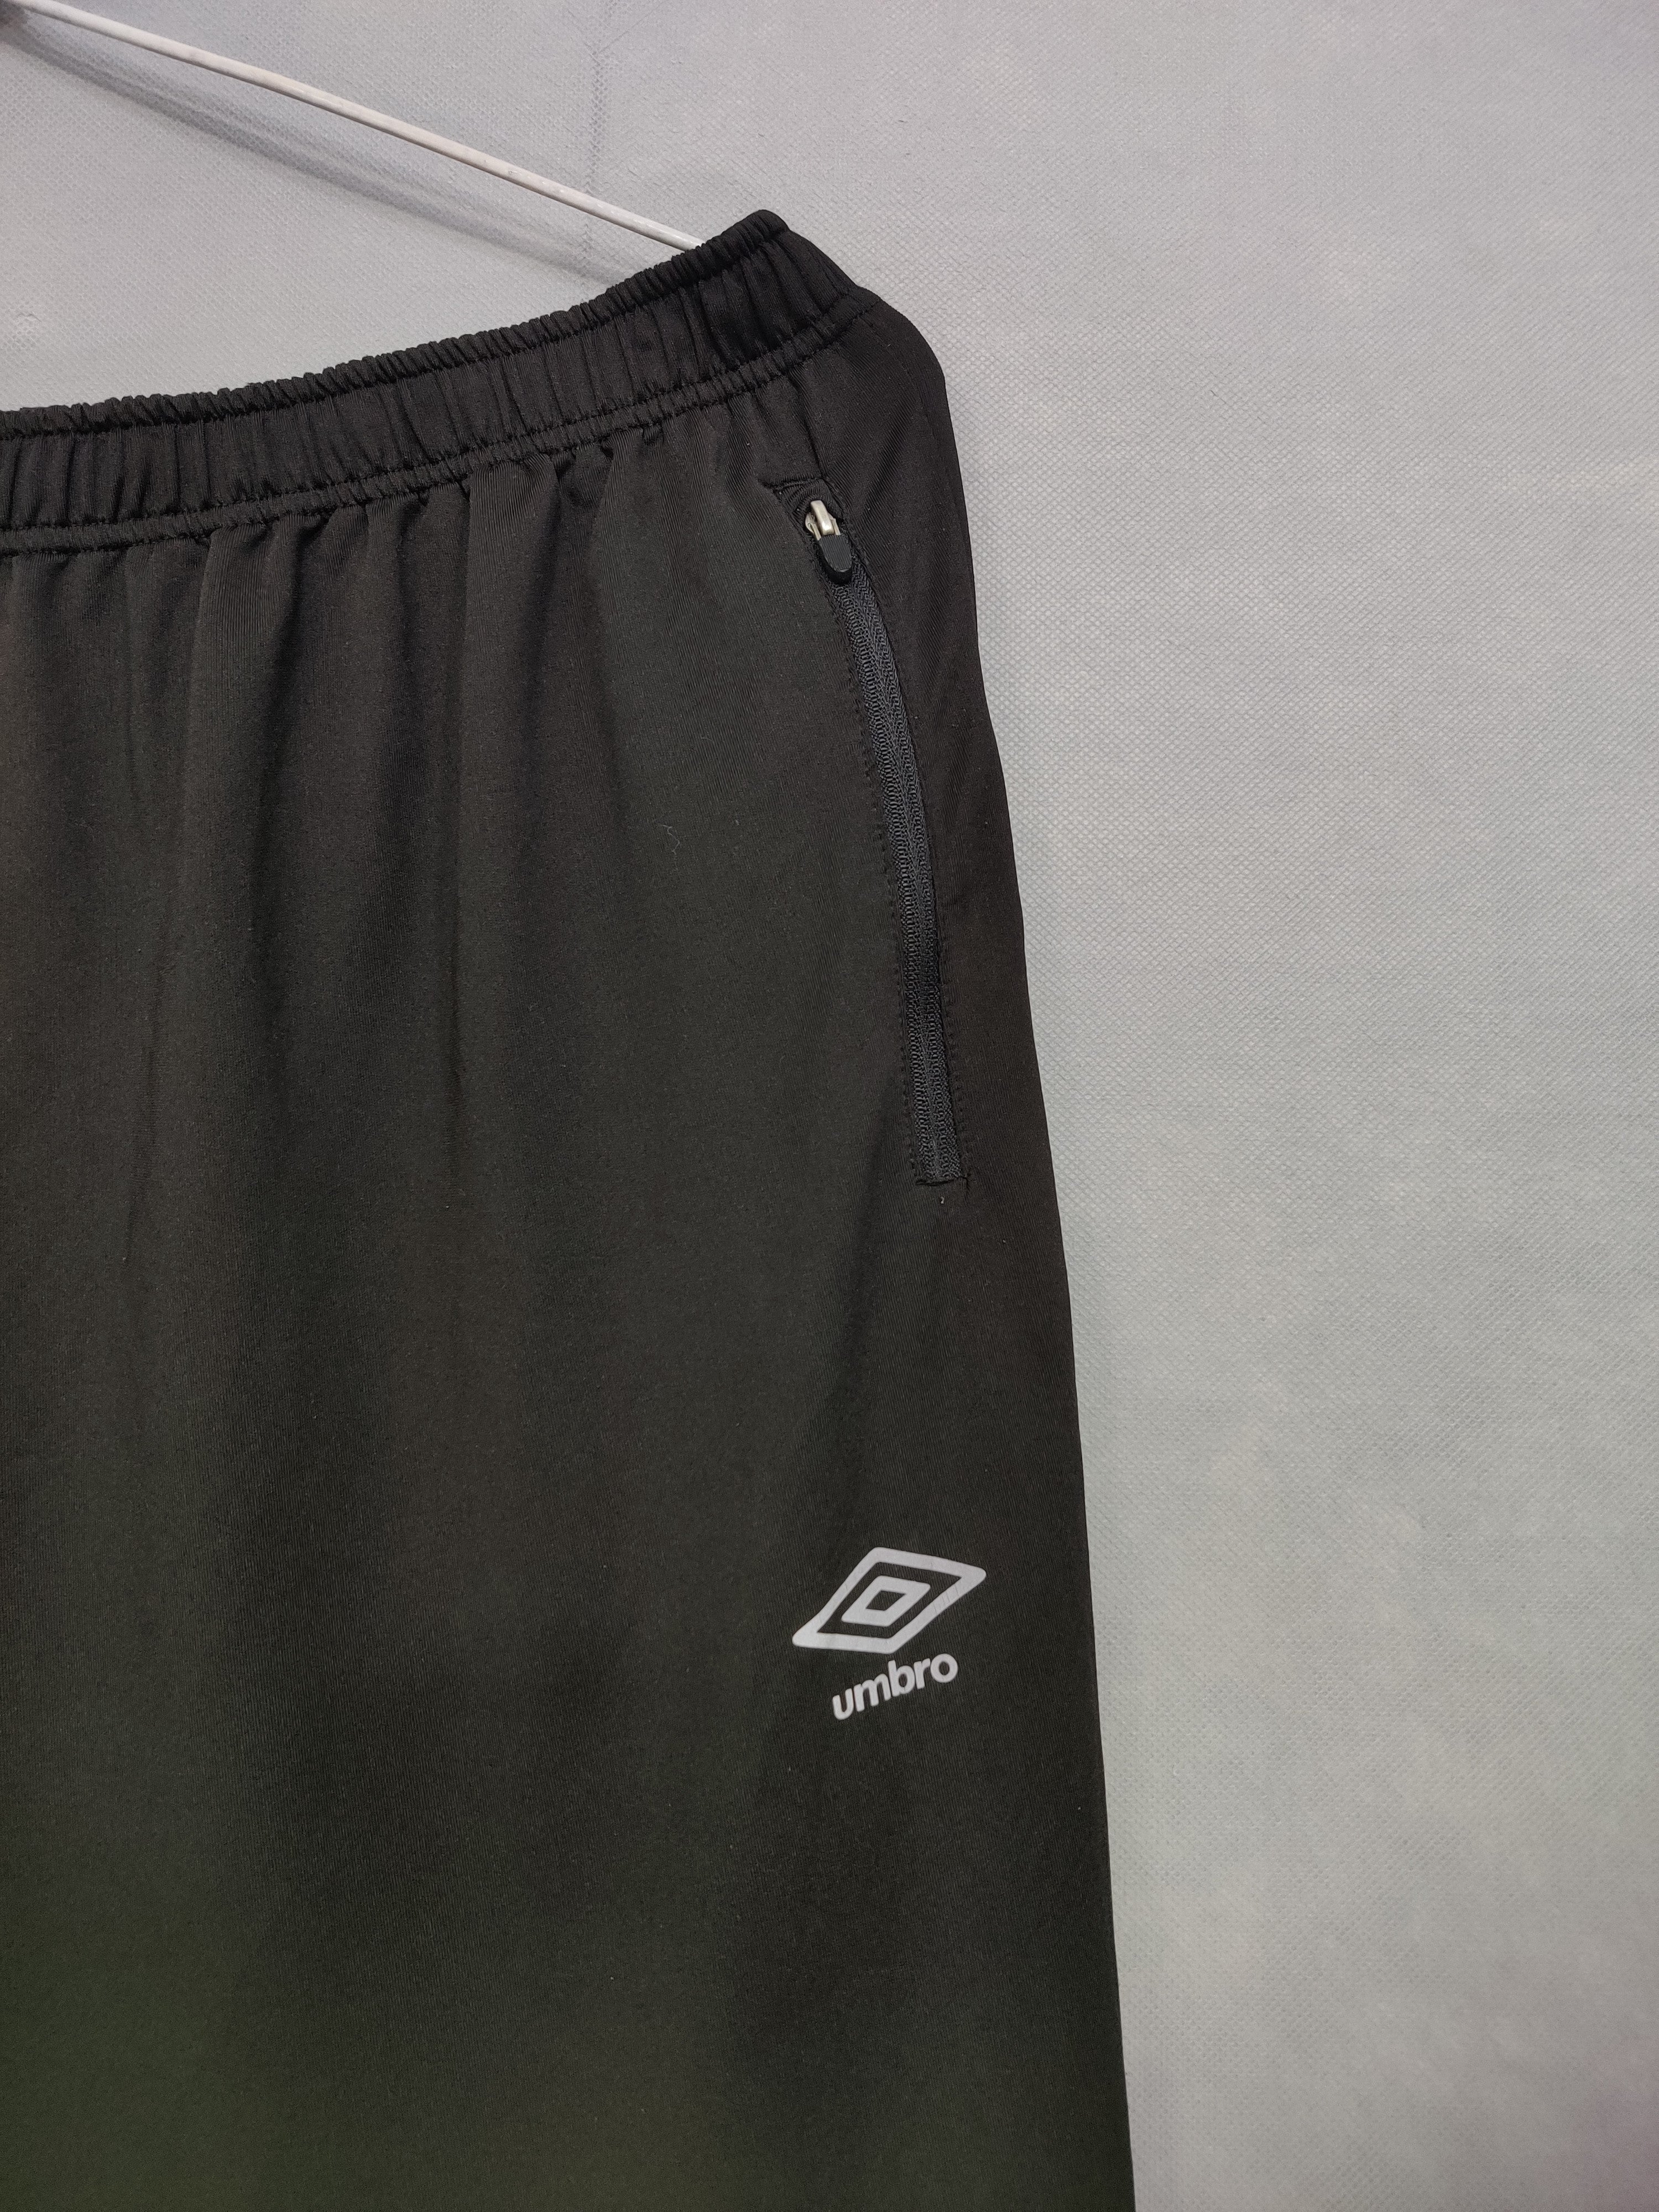 Umbro Branded Original Sports Trouser For Men